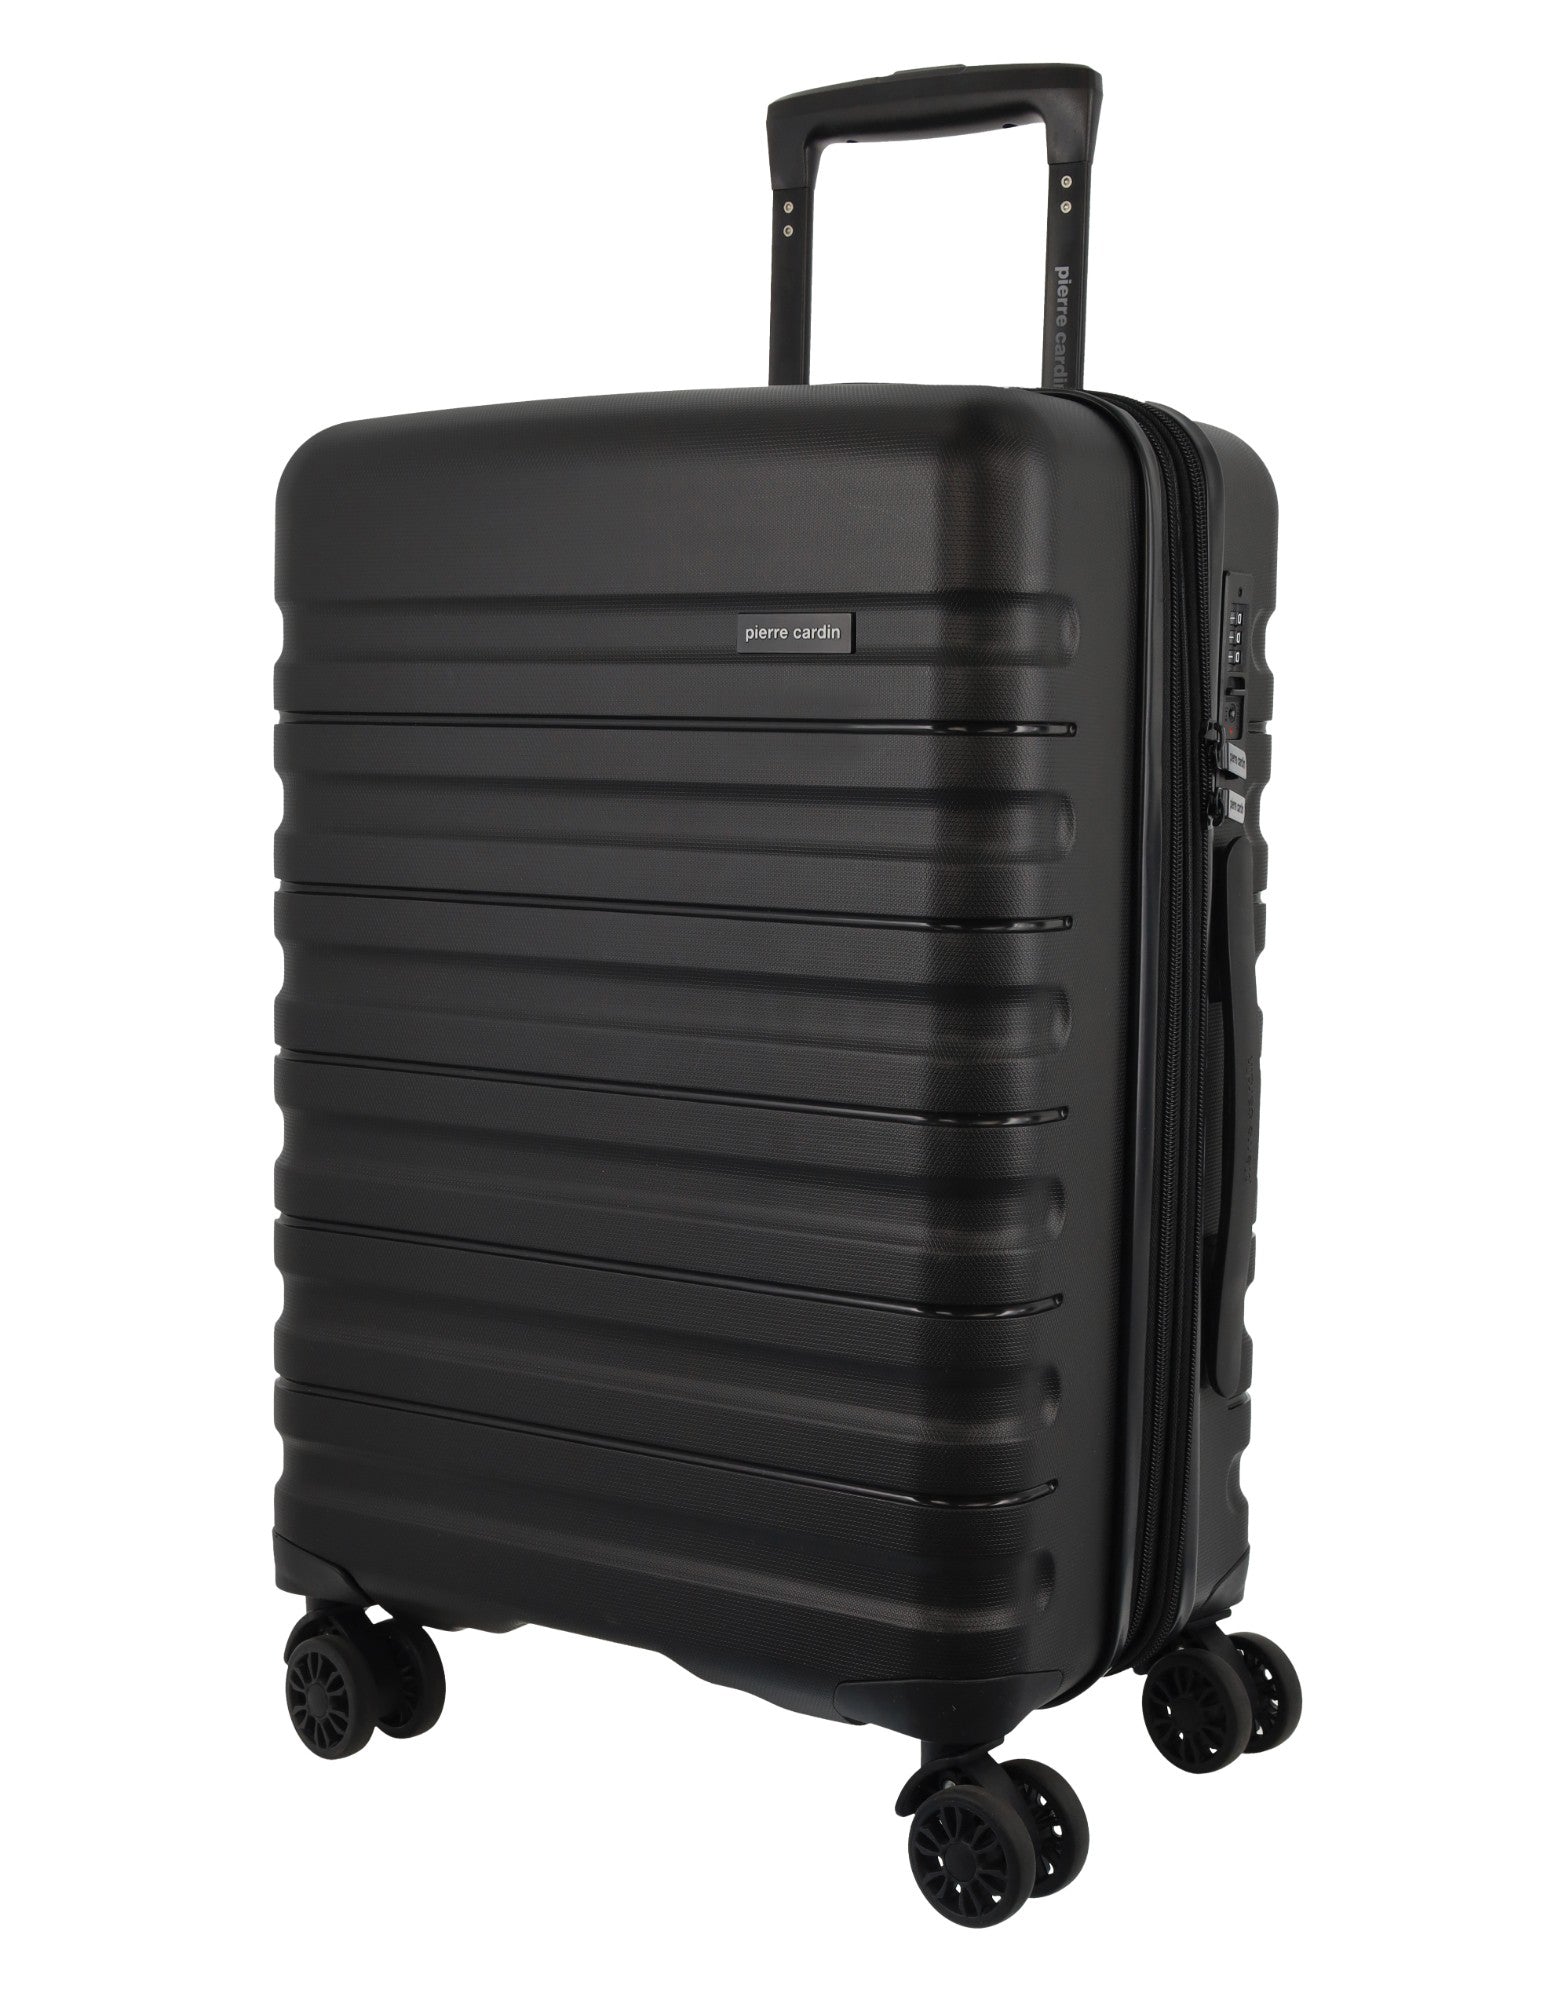 Pierre Cardin 54cm CABIN Hard Shell Suitcase in Black